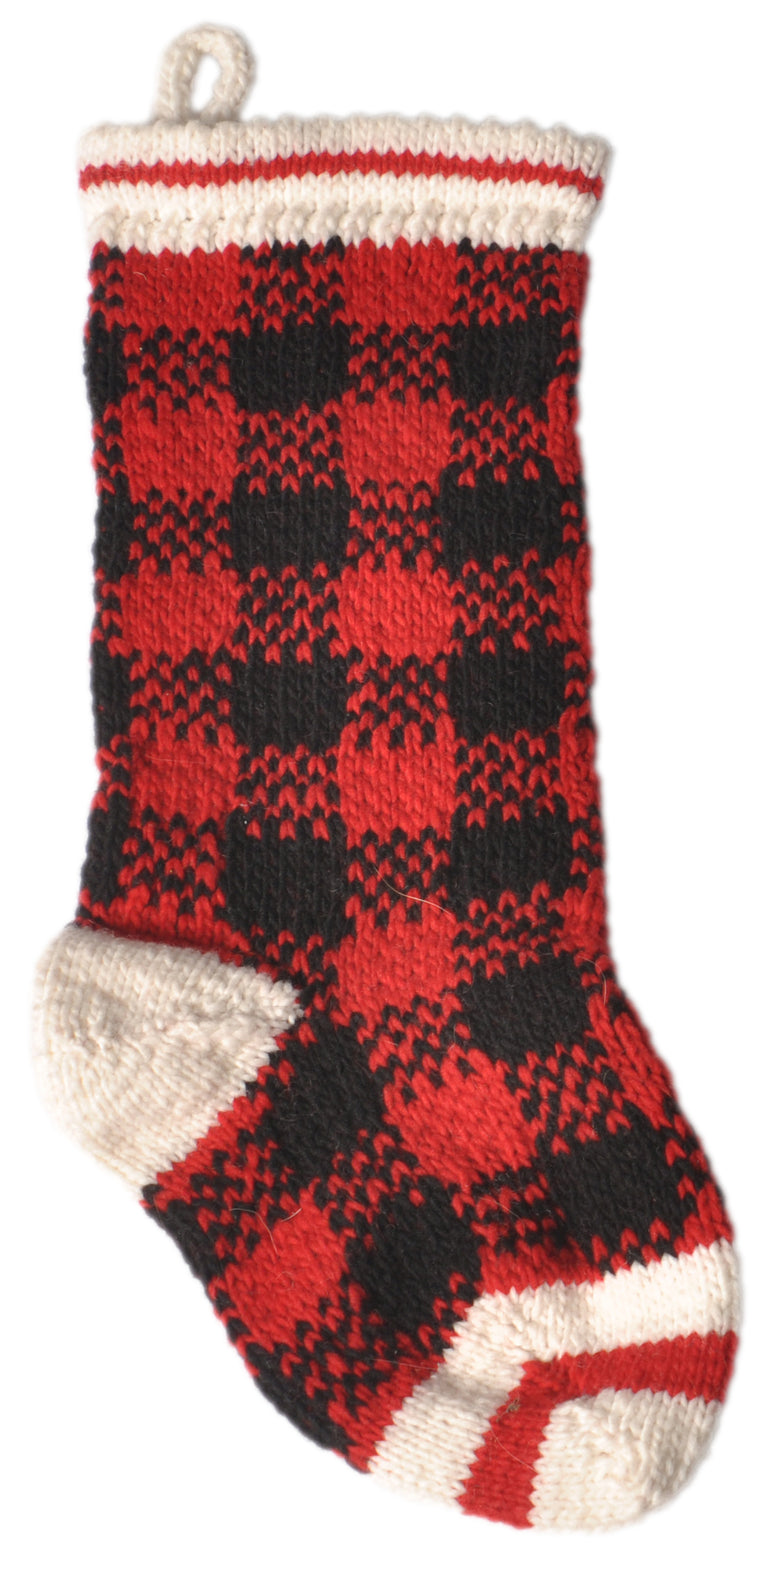 Apparel - Sweater - Wool - "Buffalo Plaid" - Matching Xmas Doggy Stocking